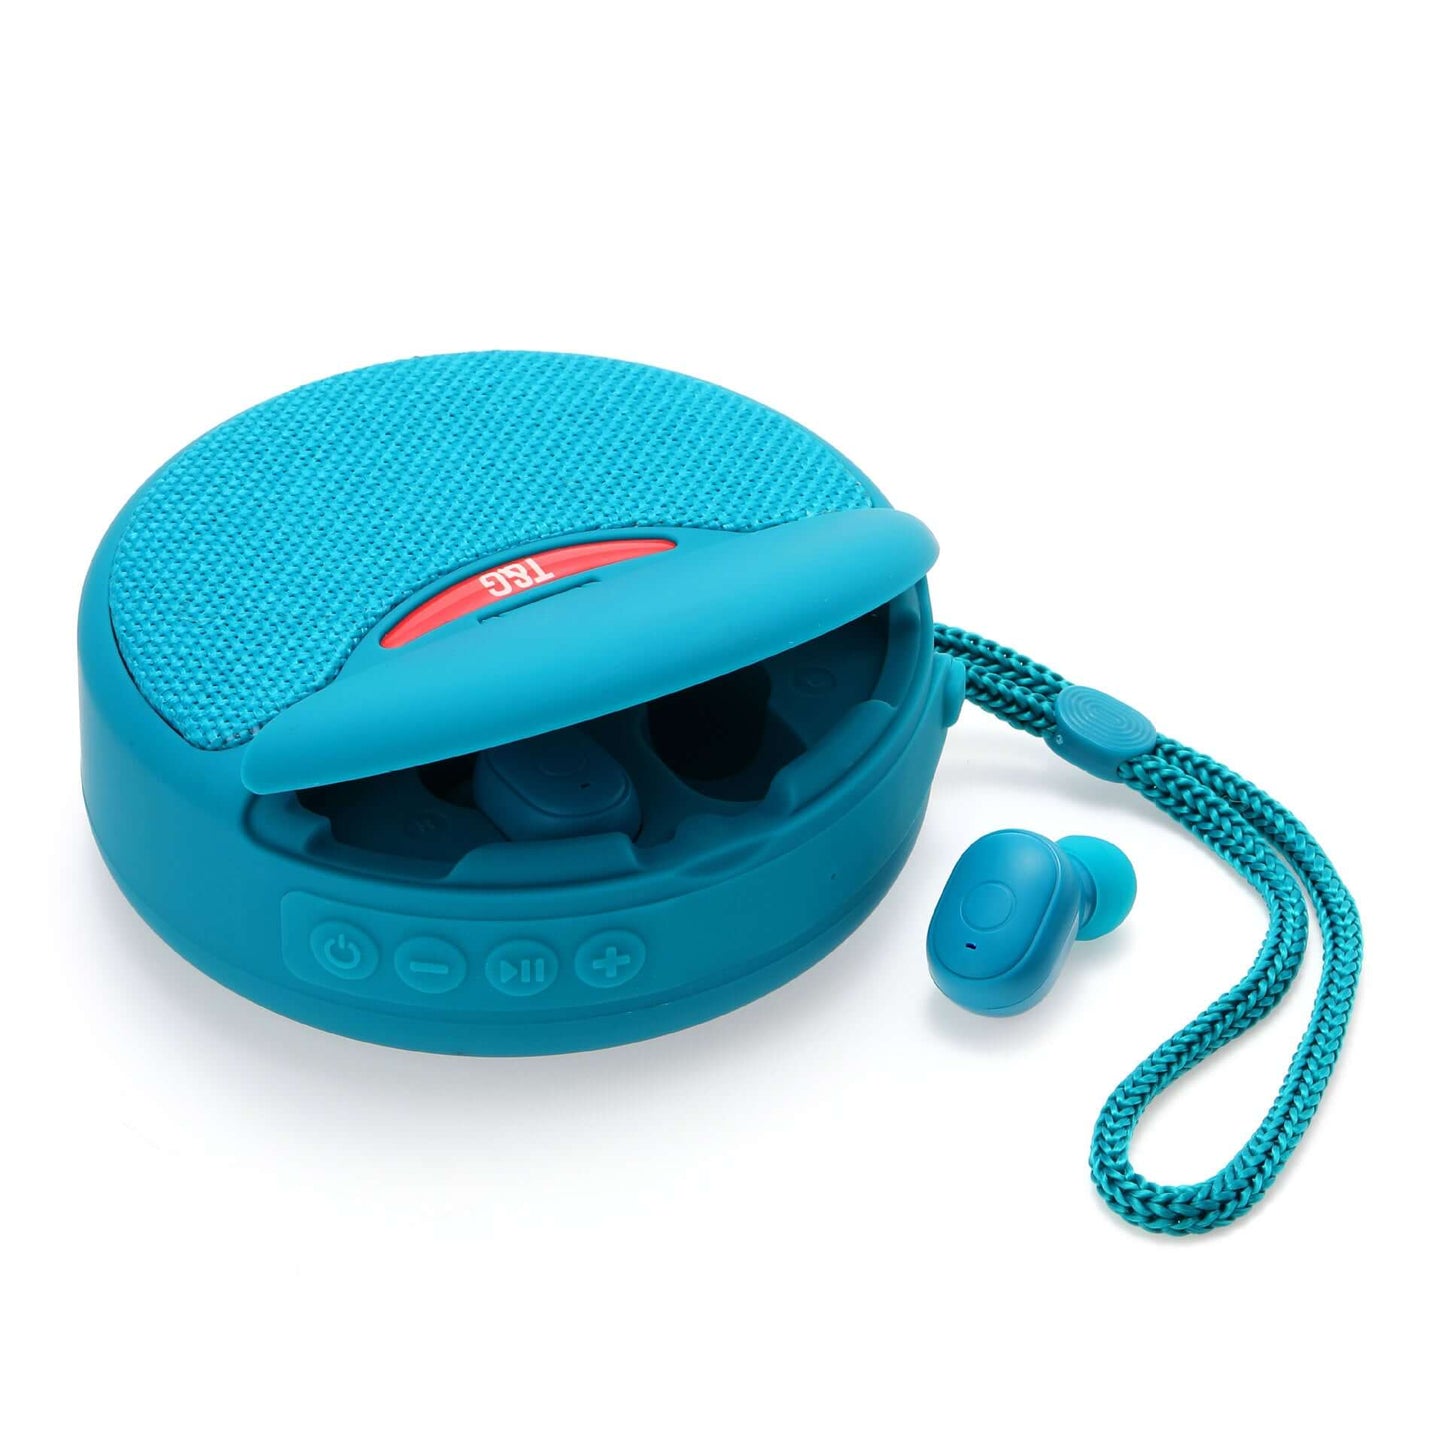 Earpods speaker best product gadget aqua